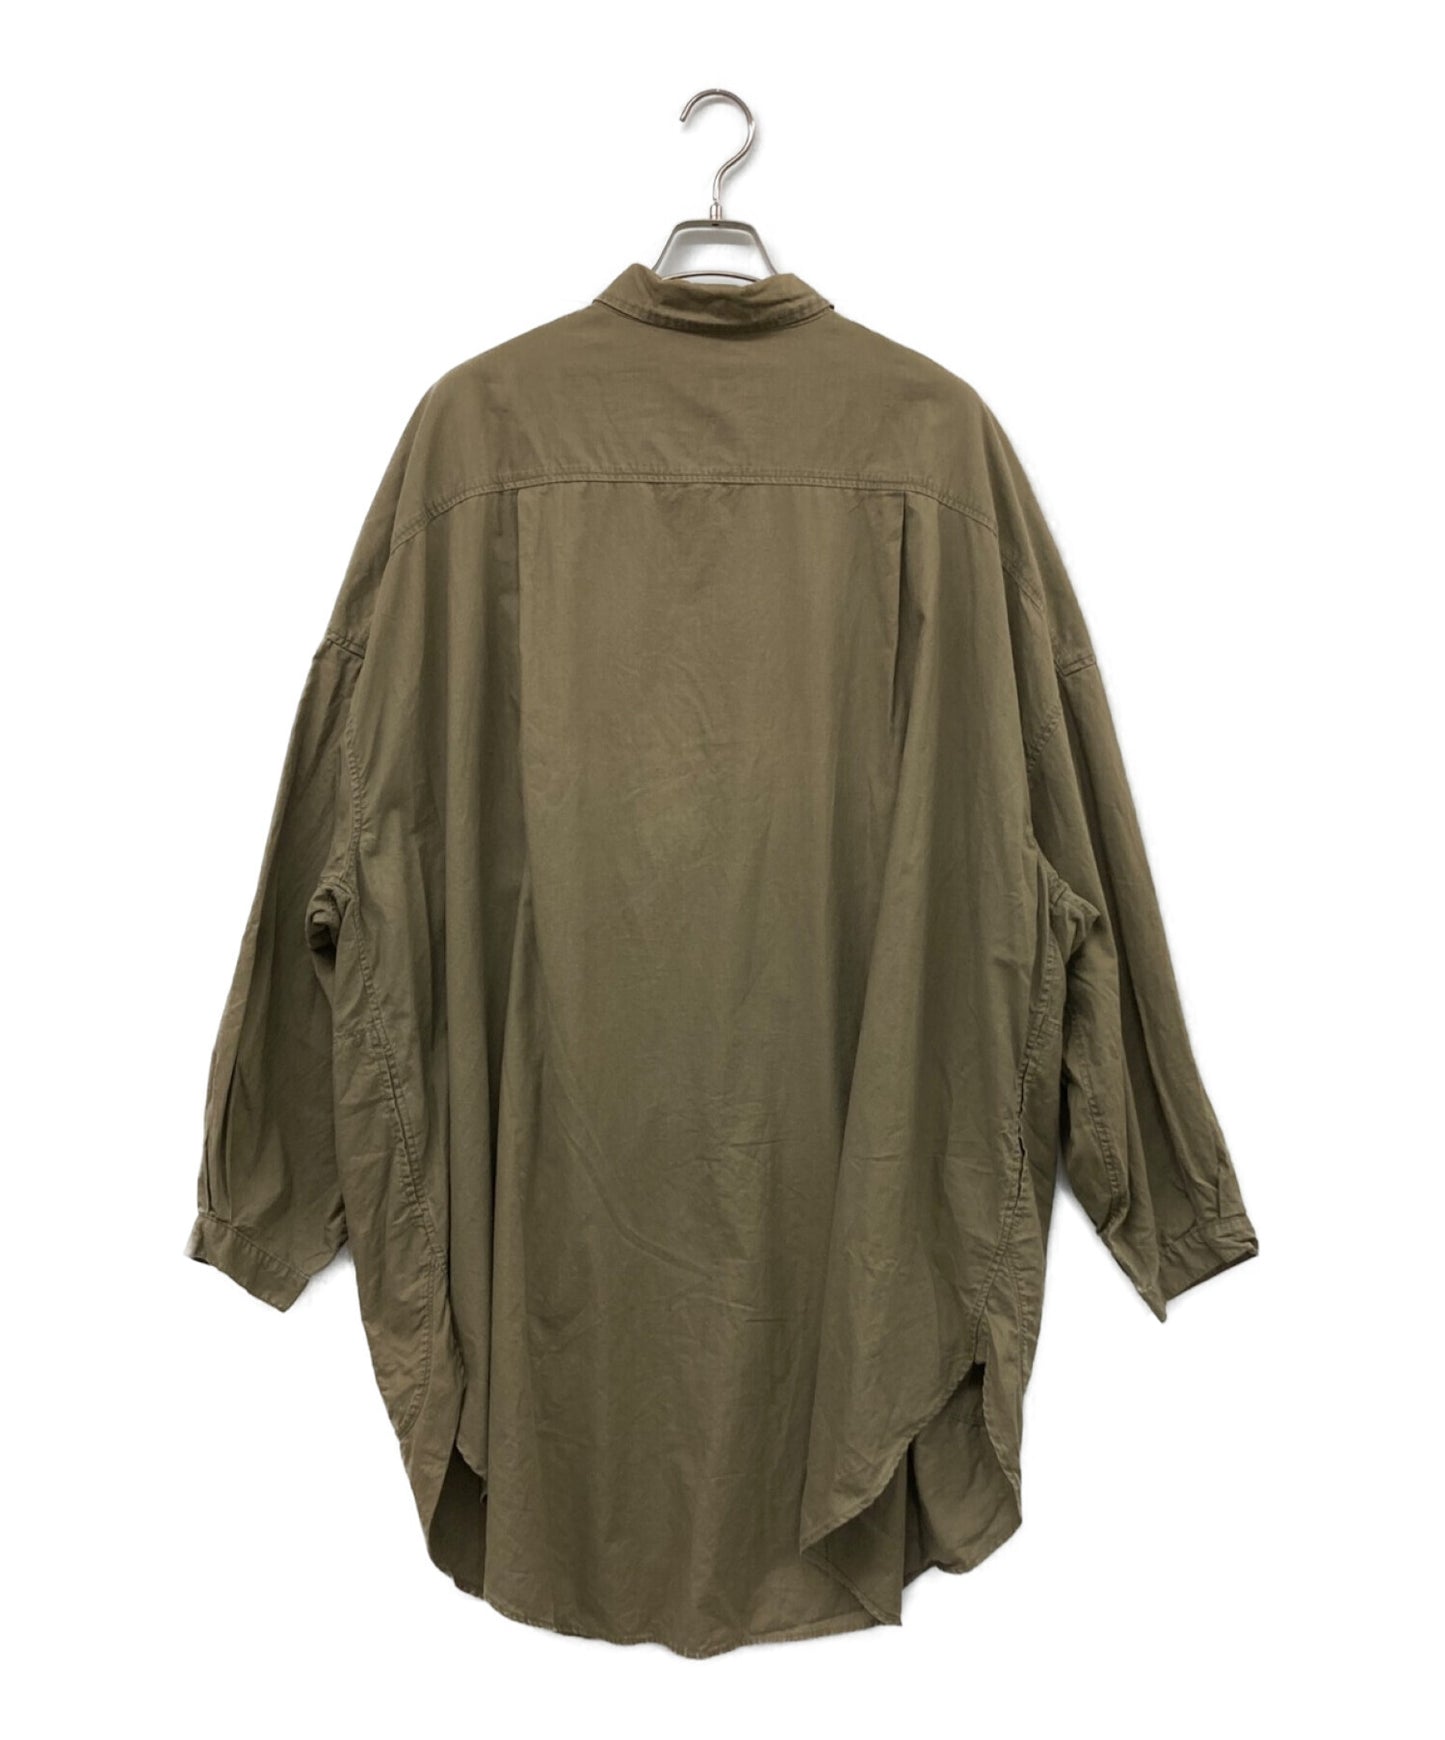 Kapital Cotton Slappy 셔츠 코트/긴 셔츠